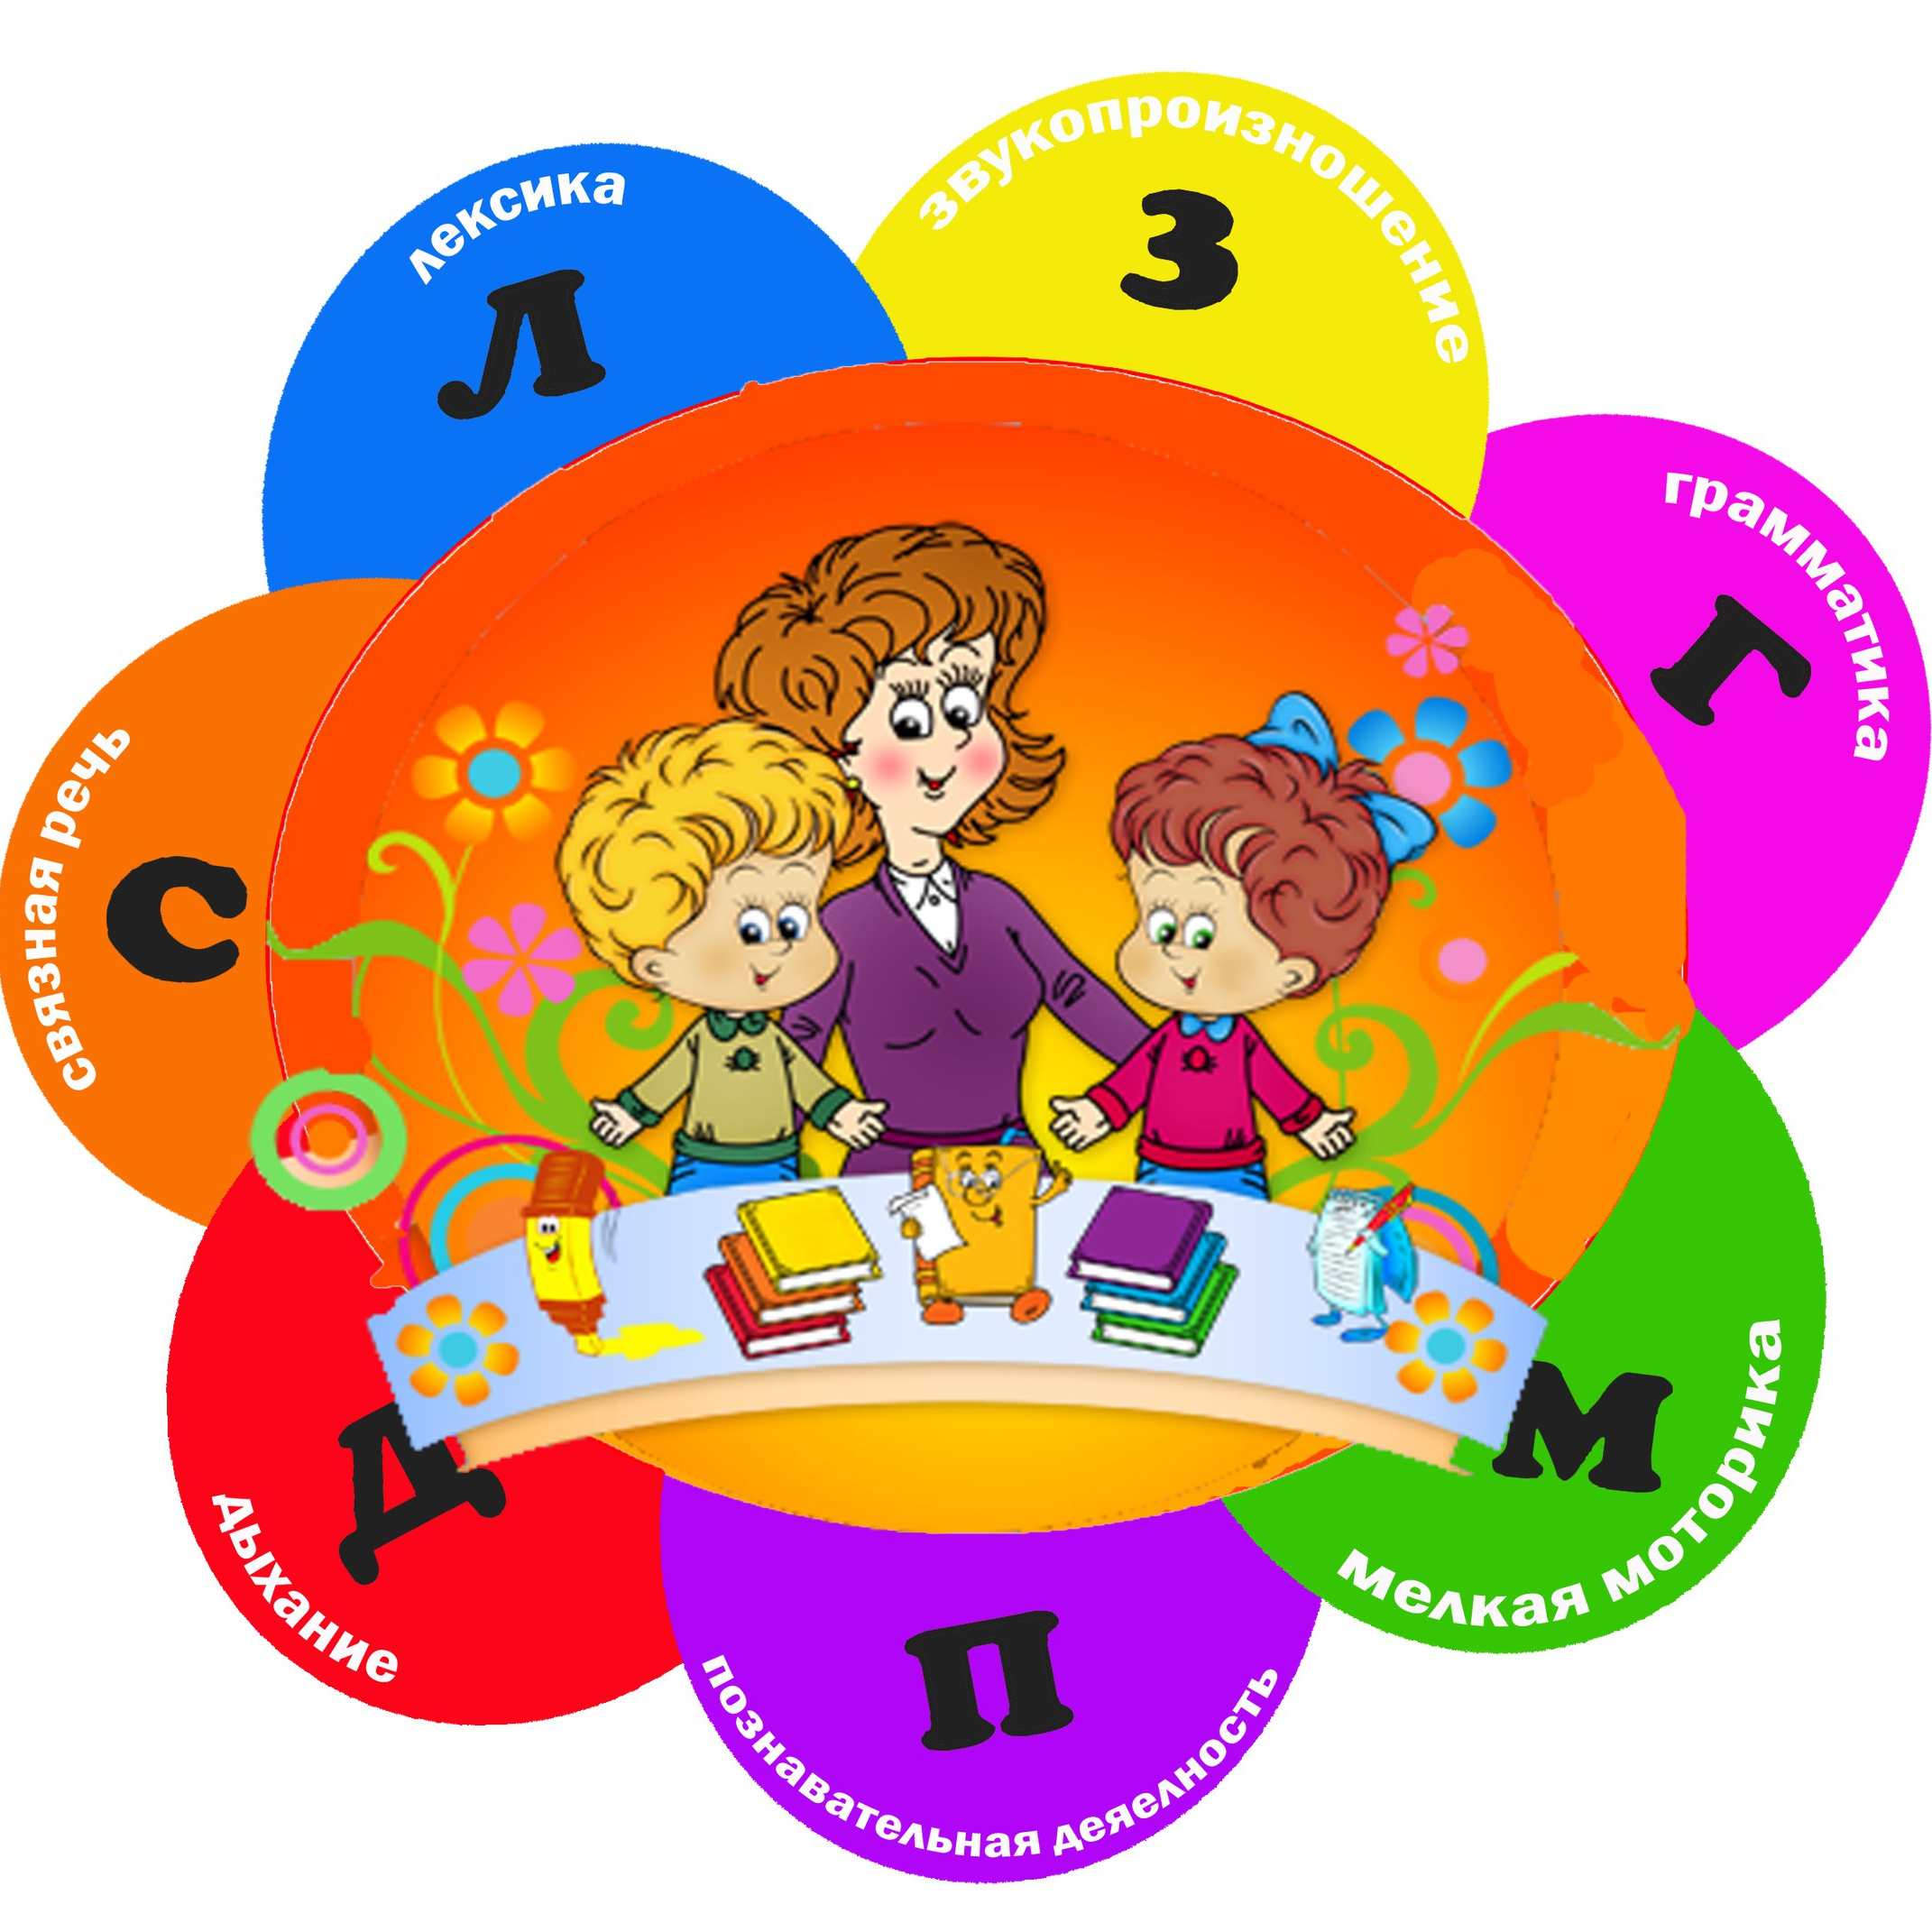 круглый стол с родителями в детском саду по развитию речи